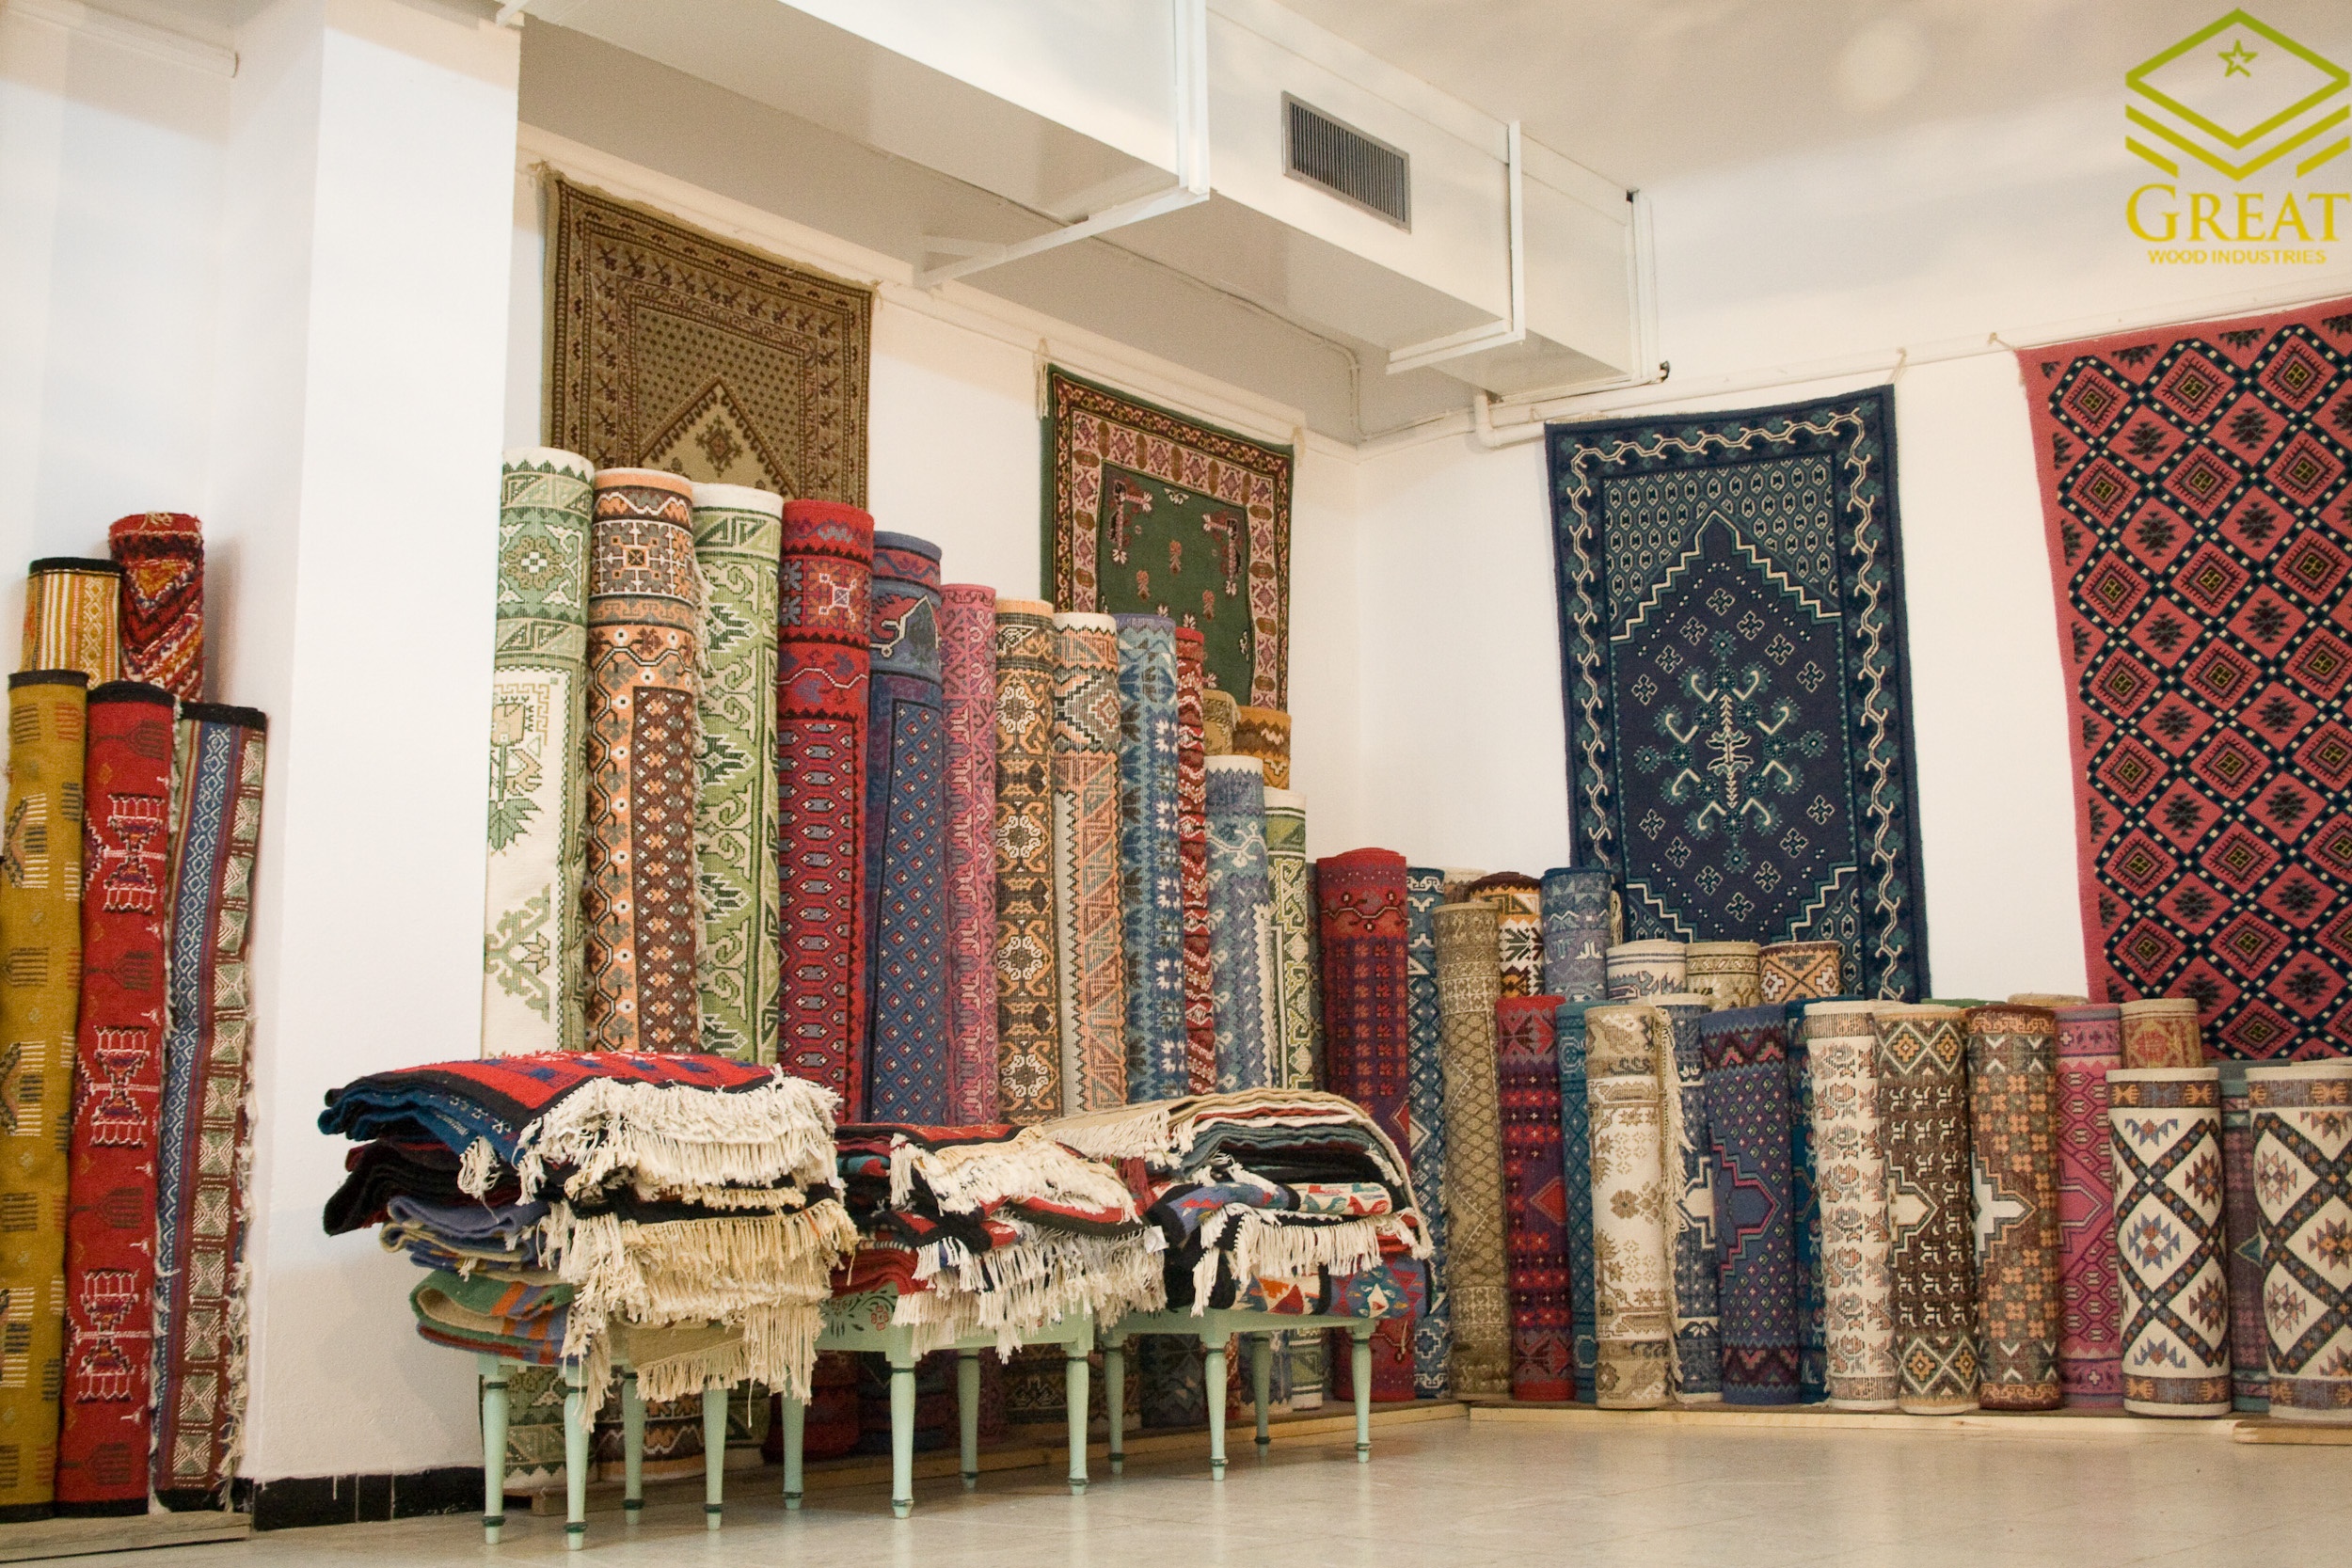 گریت کابینت | شرکت کابینت آشپزخانه گریت | Kairouan carpets shop